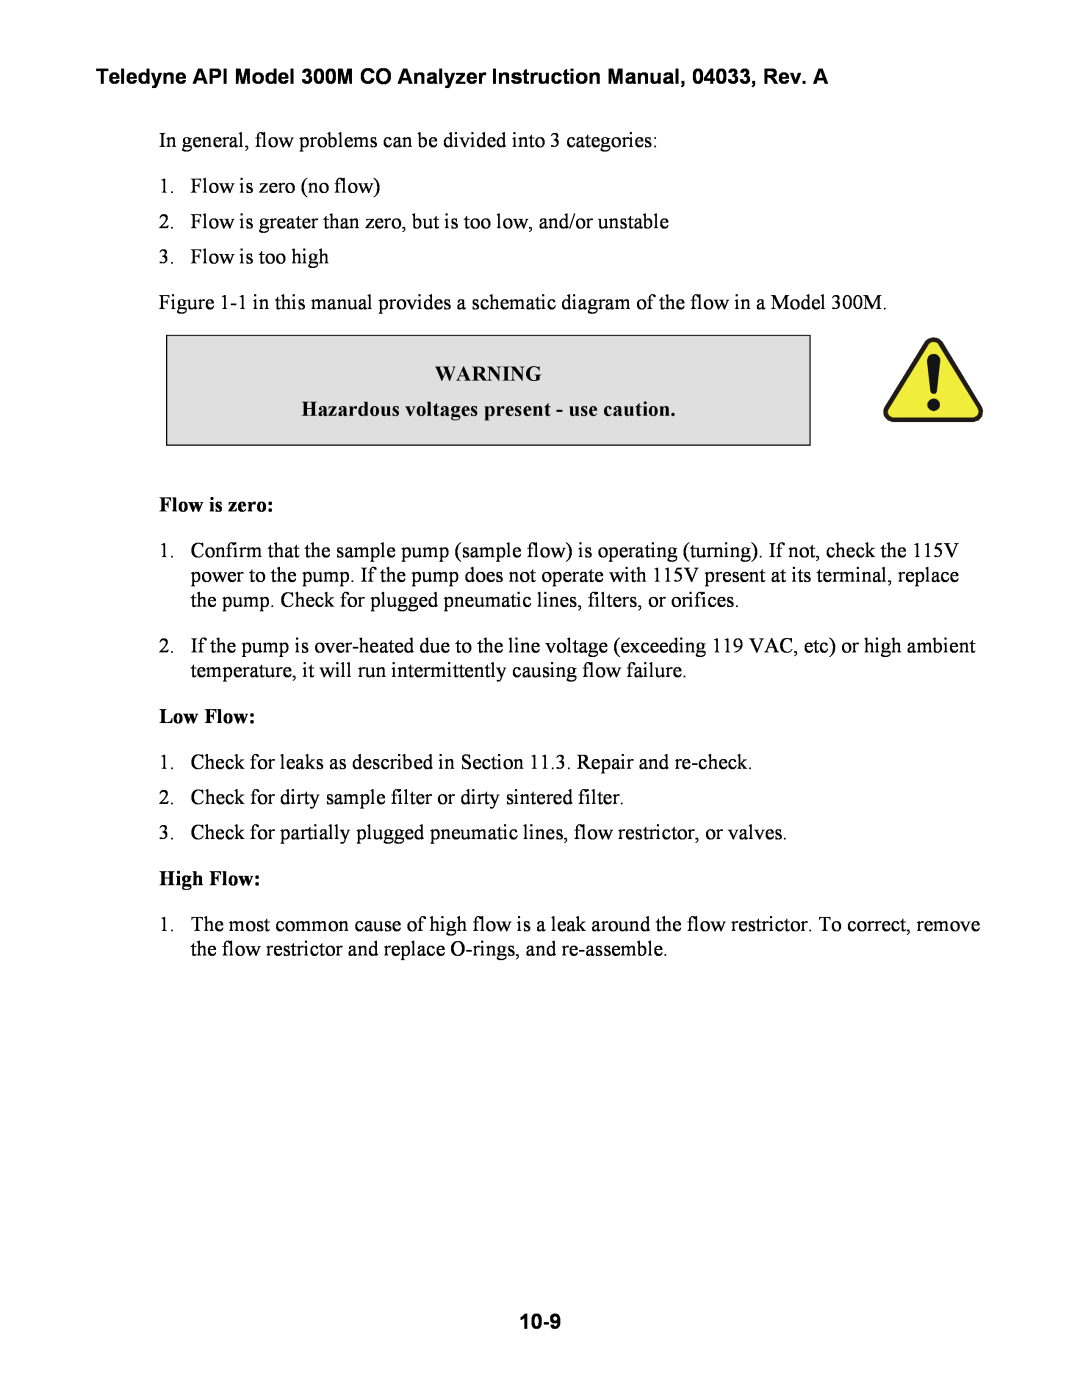 Teledyne 300M instruction manual Hazardous voltages present - use caution, Flow is zero, Low Flow, High Flow, 10-9 